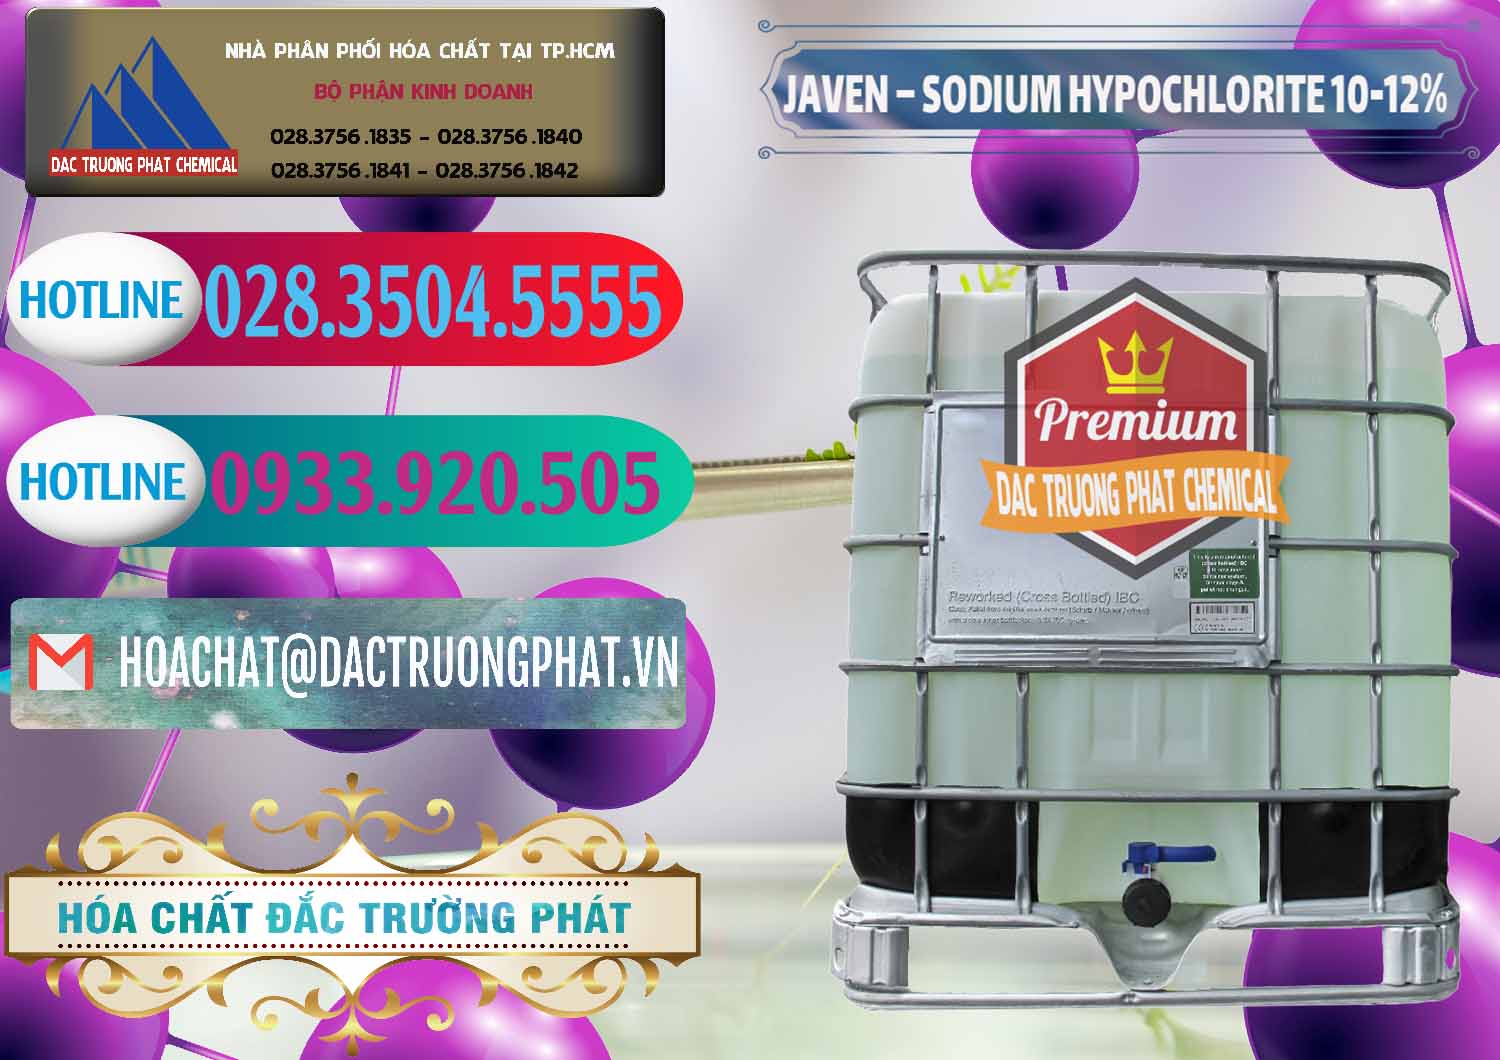 Chuyên bán _ phân phối Javen - Sodium Hypochlorite 10-12% Việt Nam - 0188 - Chuyên phân phối _ bán hóa chất tại TP.HCM - truongphat.vn